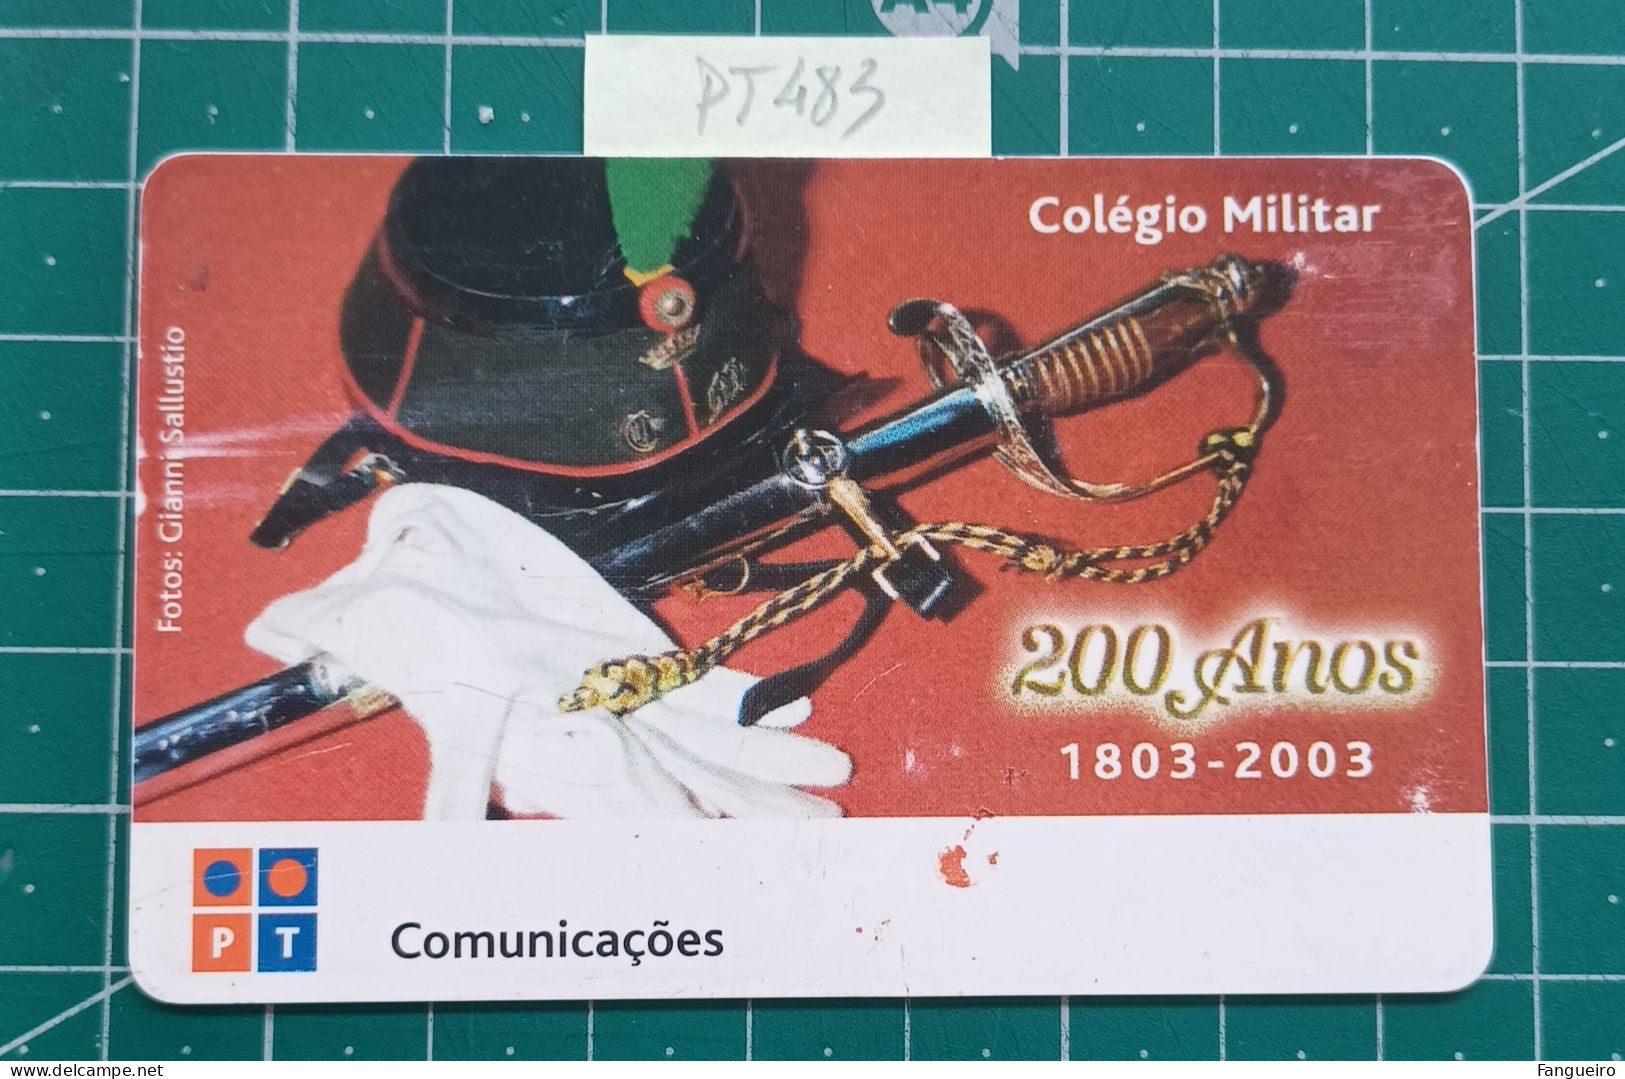 PORTUGAL USED PHONECARD PT483 COLEGIO MILITAR - Portugal